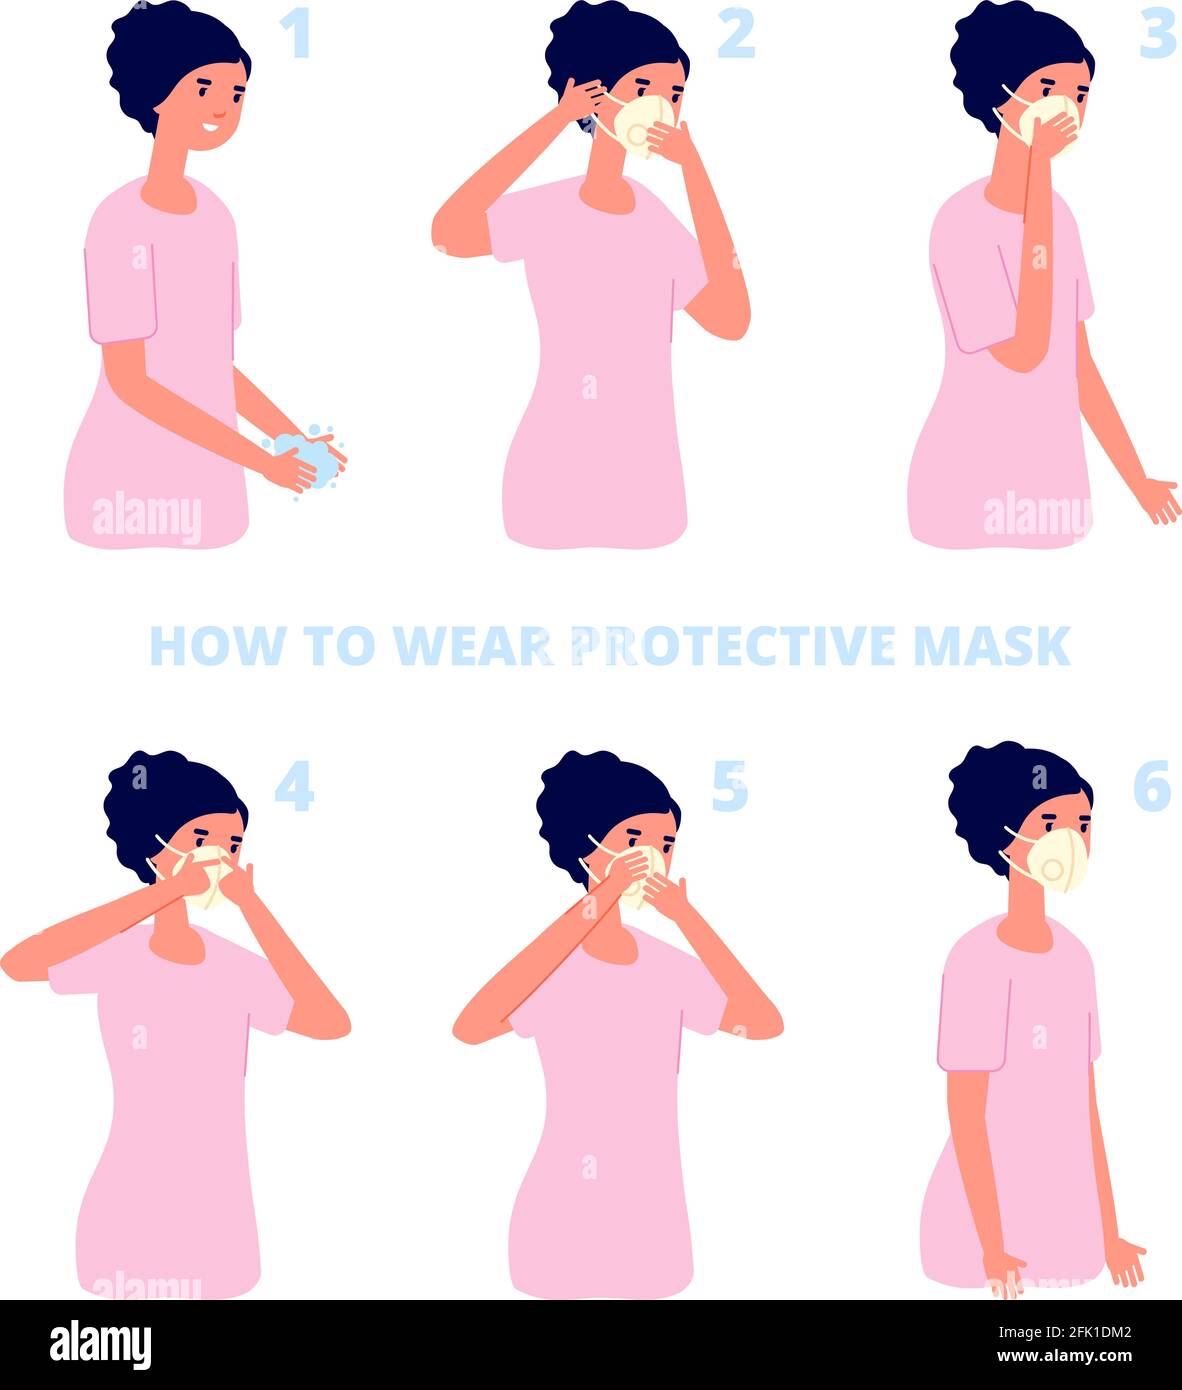 Instrucciones de la máscara protectora. Protección contra virus o contaminación, prevención individual de la gripe. La salud del coronavirus plano protege la ilustración del vector Ilustración del Vector